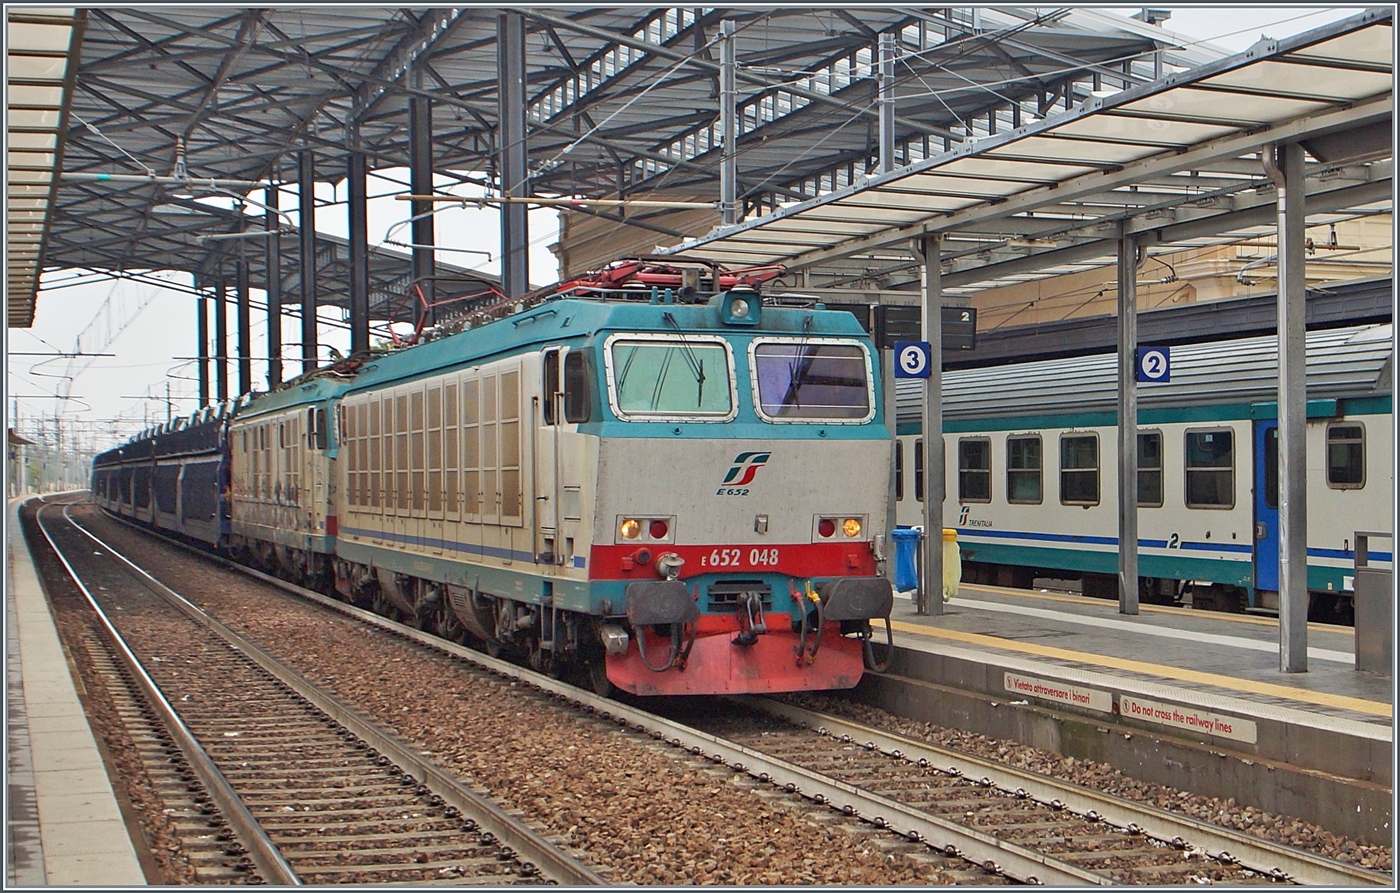 Die FS Trenitalia E 652 048 und eine weitere fahren mit einem Autoverladewagen durch den Bahnhof von Parma in Richtung Süden.

20. Sept. 2014 